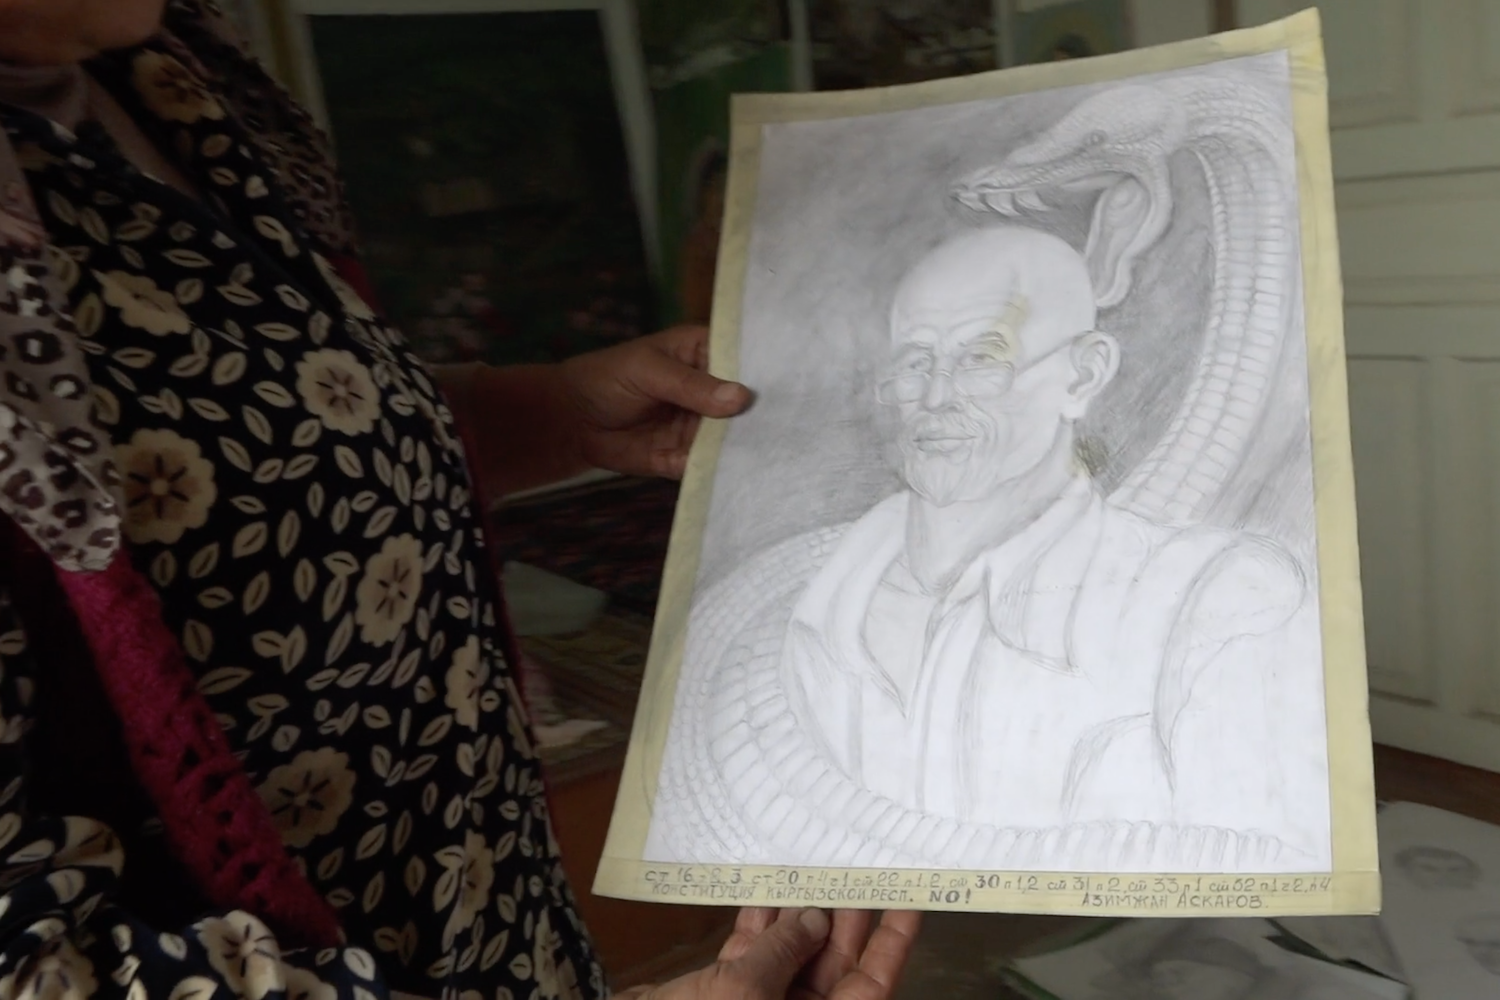 Khadicha holding Azimjan's self-portrait.